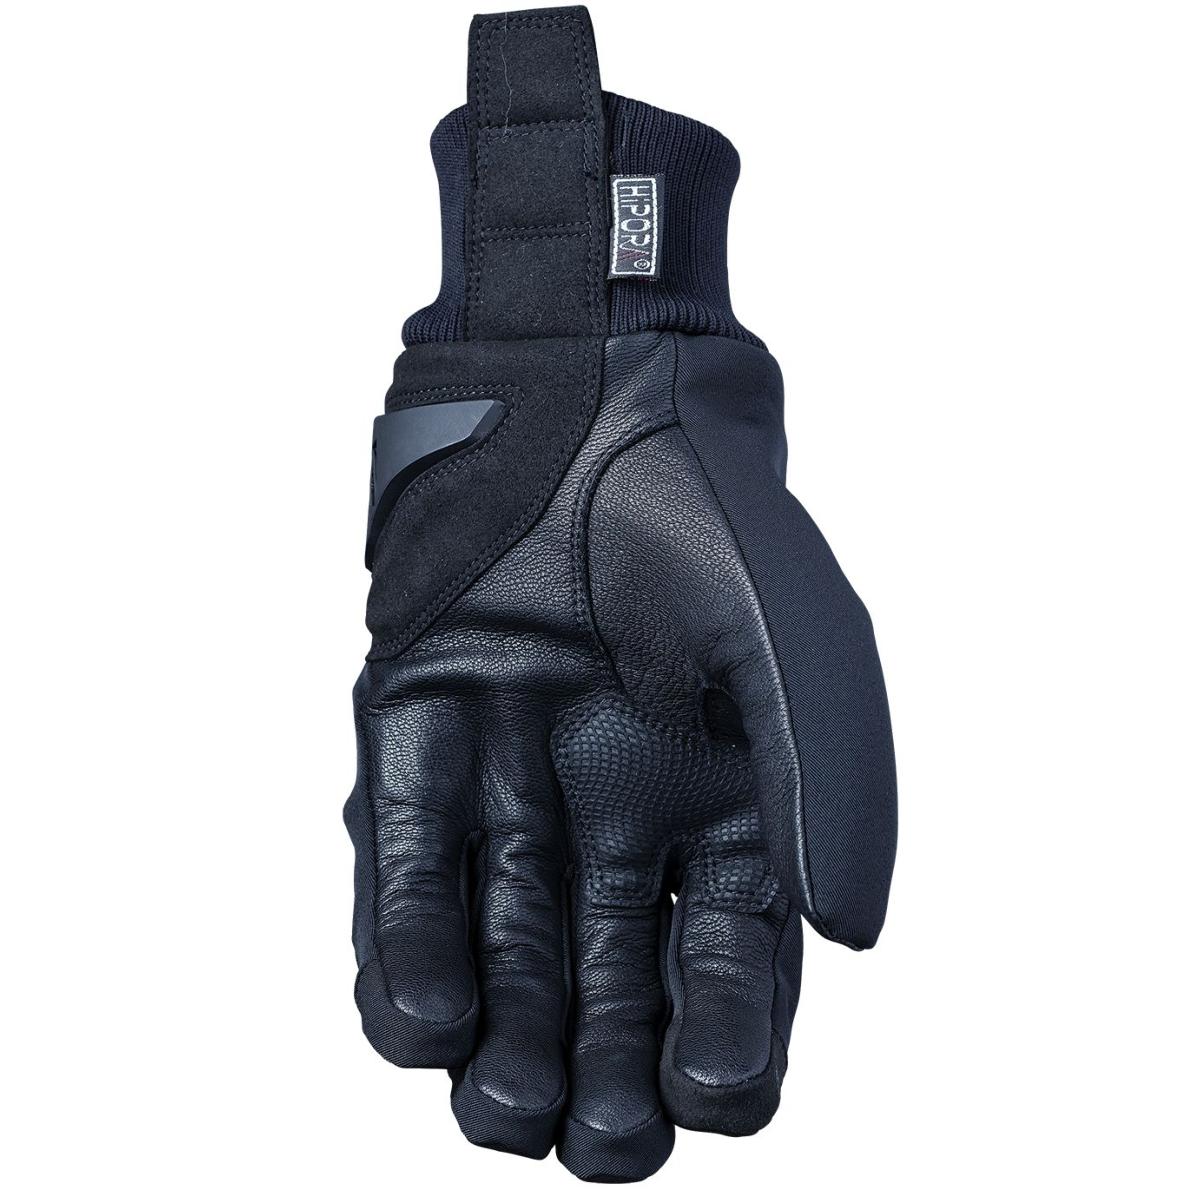 Comment bien choisir ses gants moto pour l'hiver ?